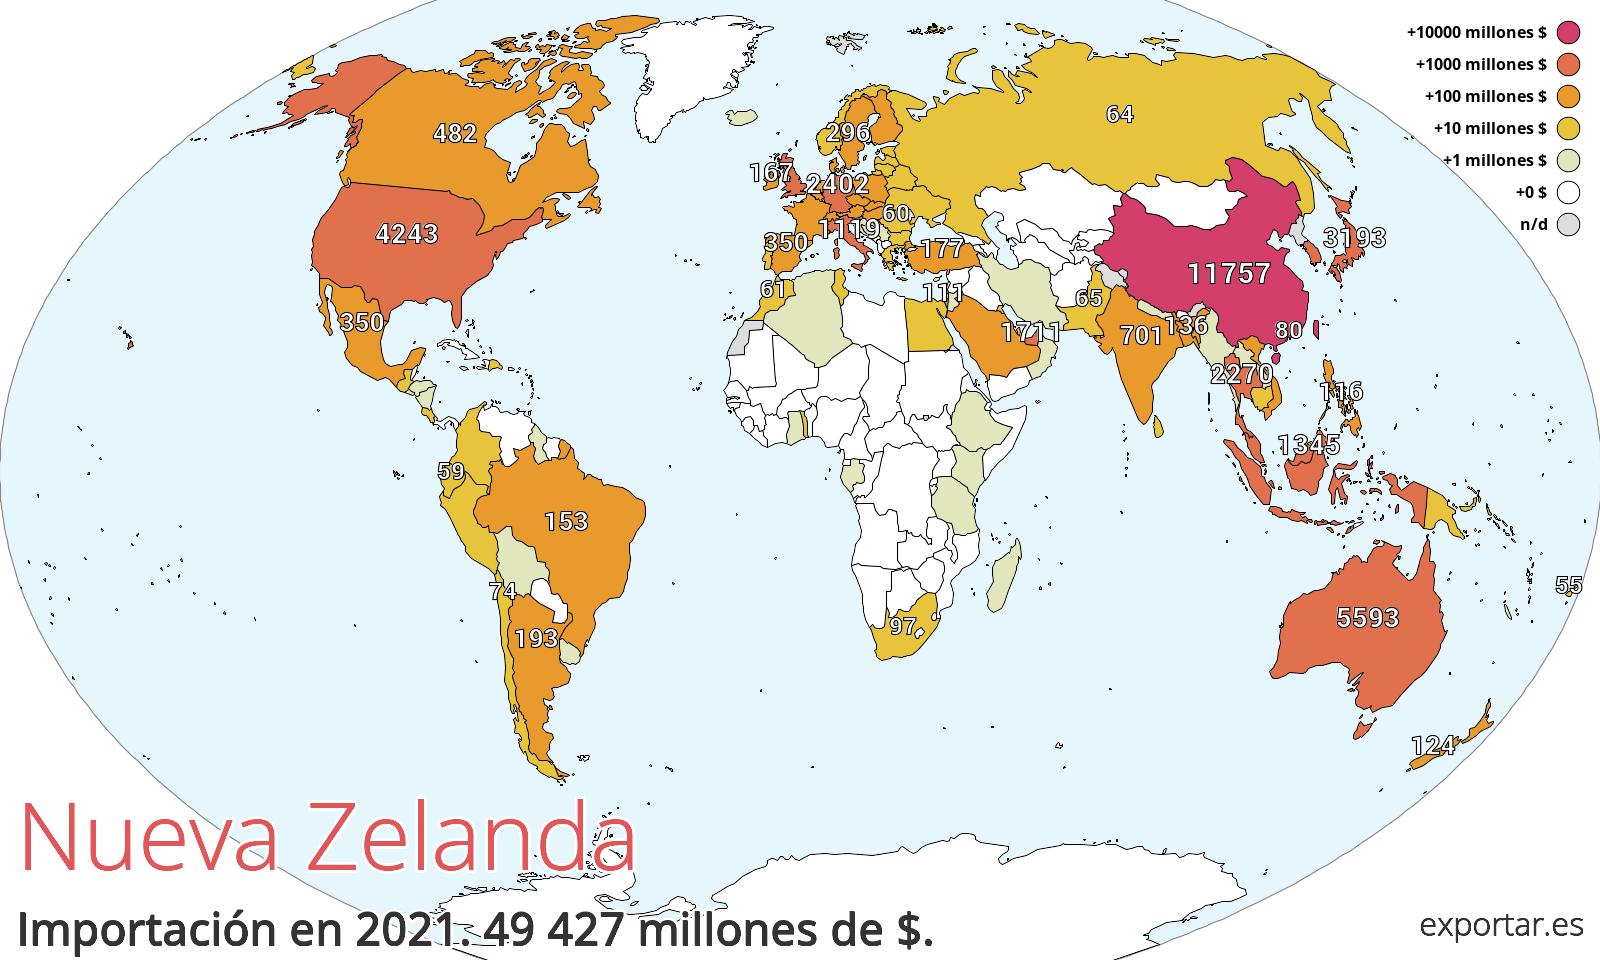 Mapa de importación de Nueva Zelanda en 2021.